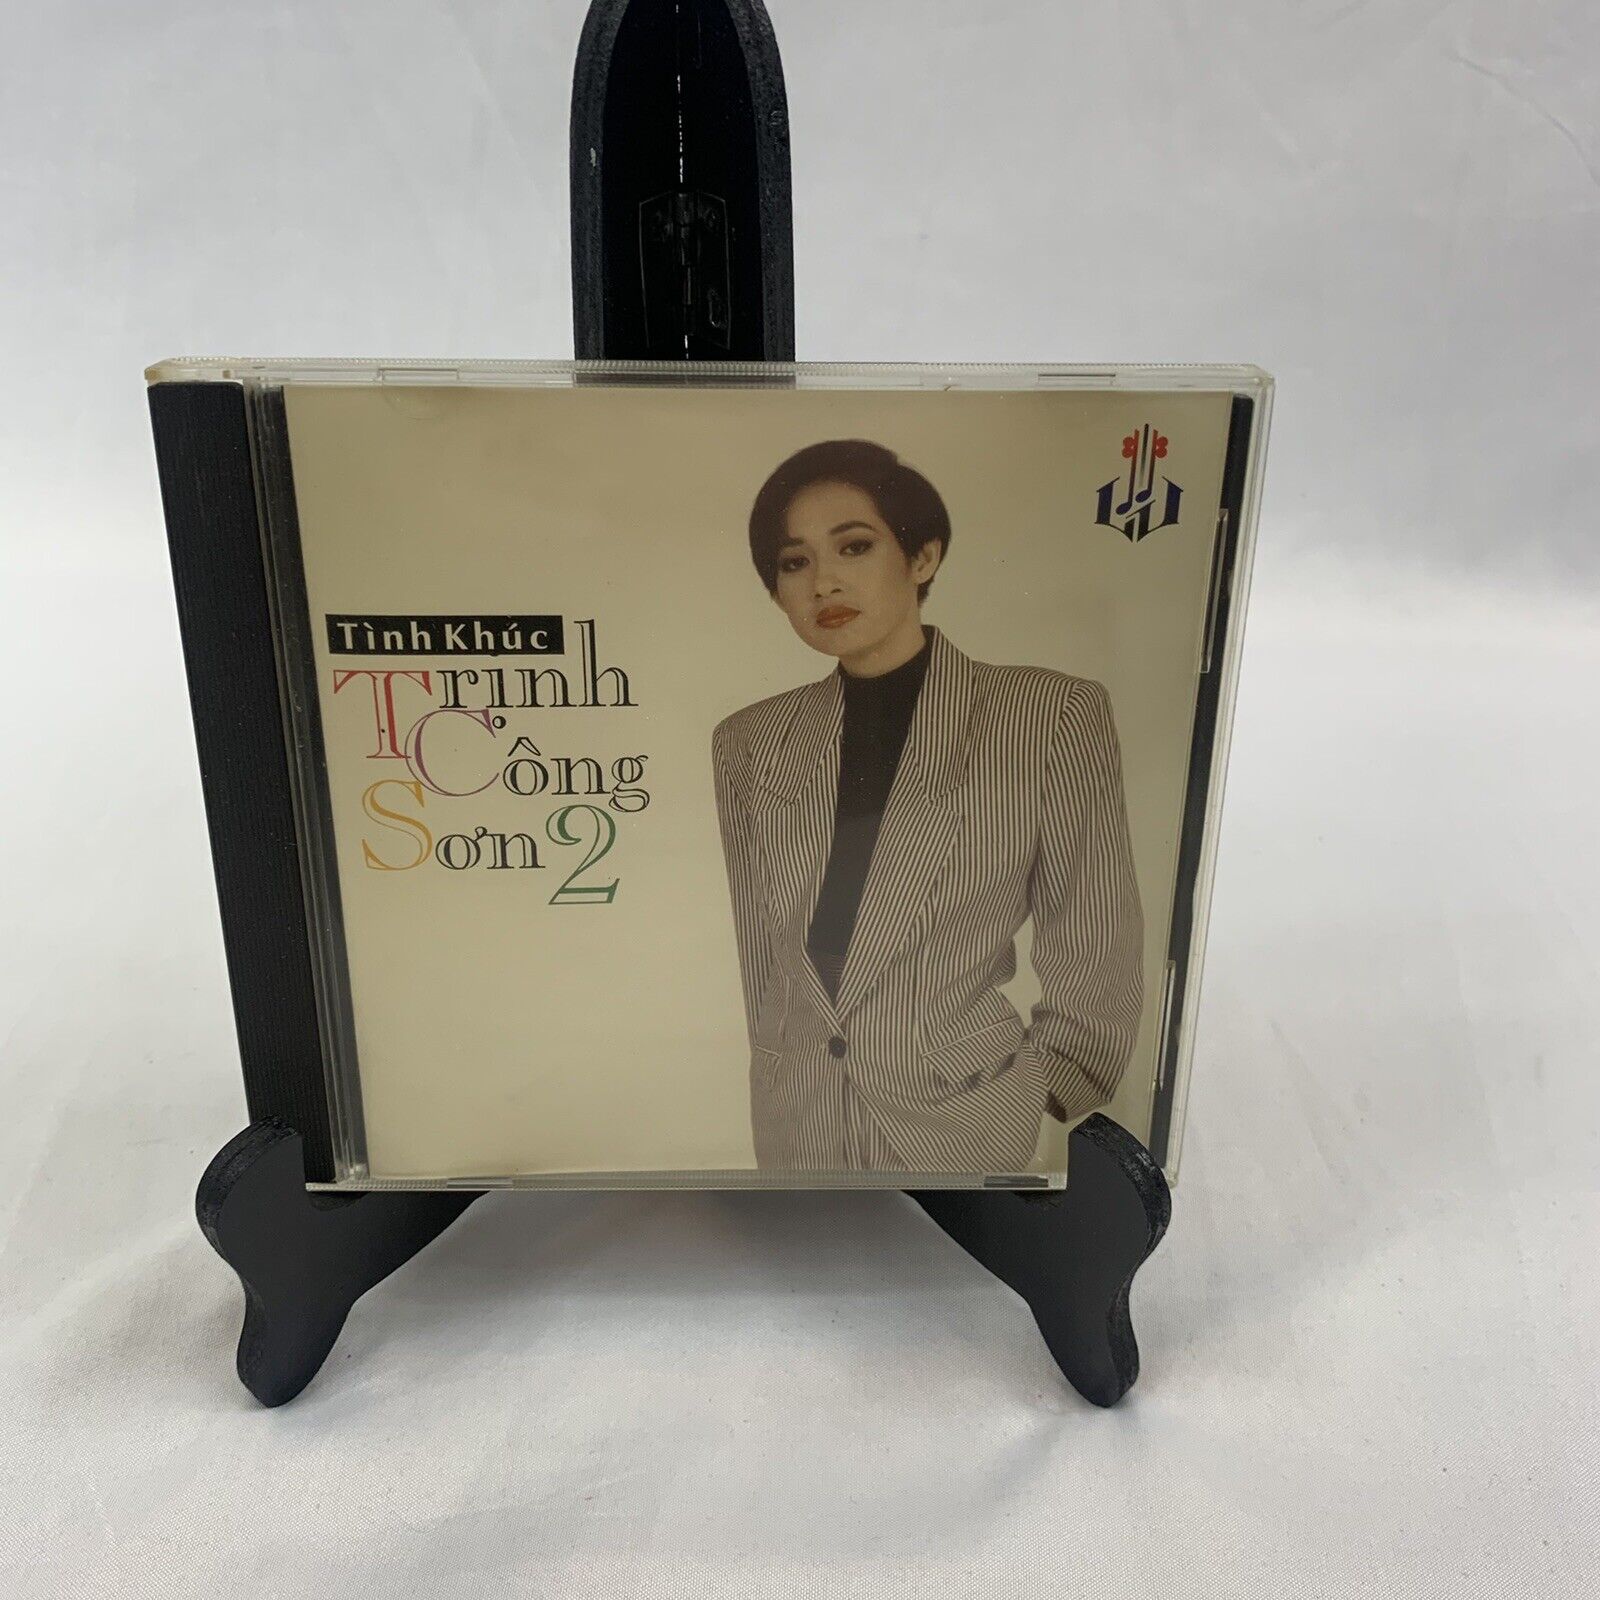 Vietnamese Music CD Tinh Khuc Trinh Cong Son 2 Vintage RARE